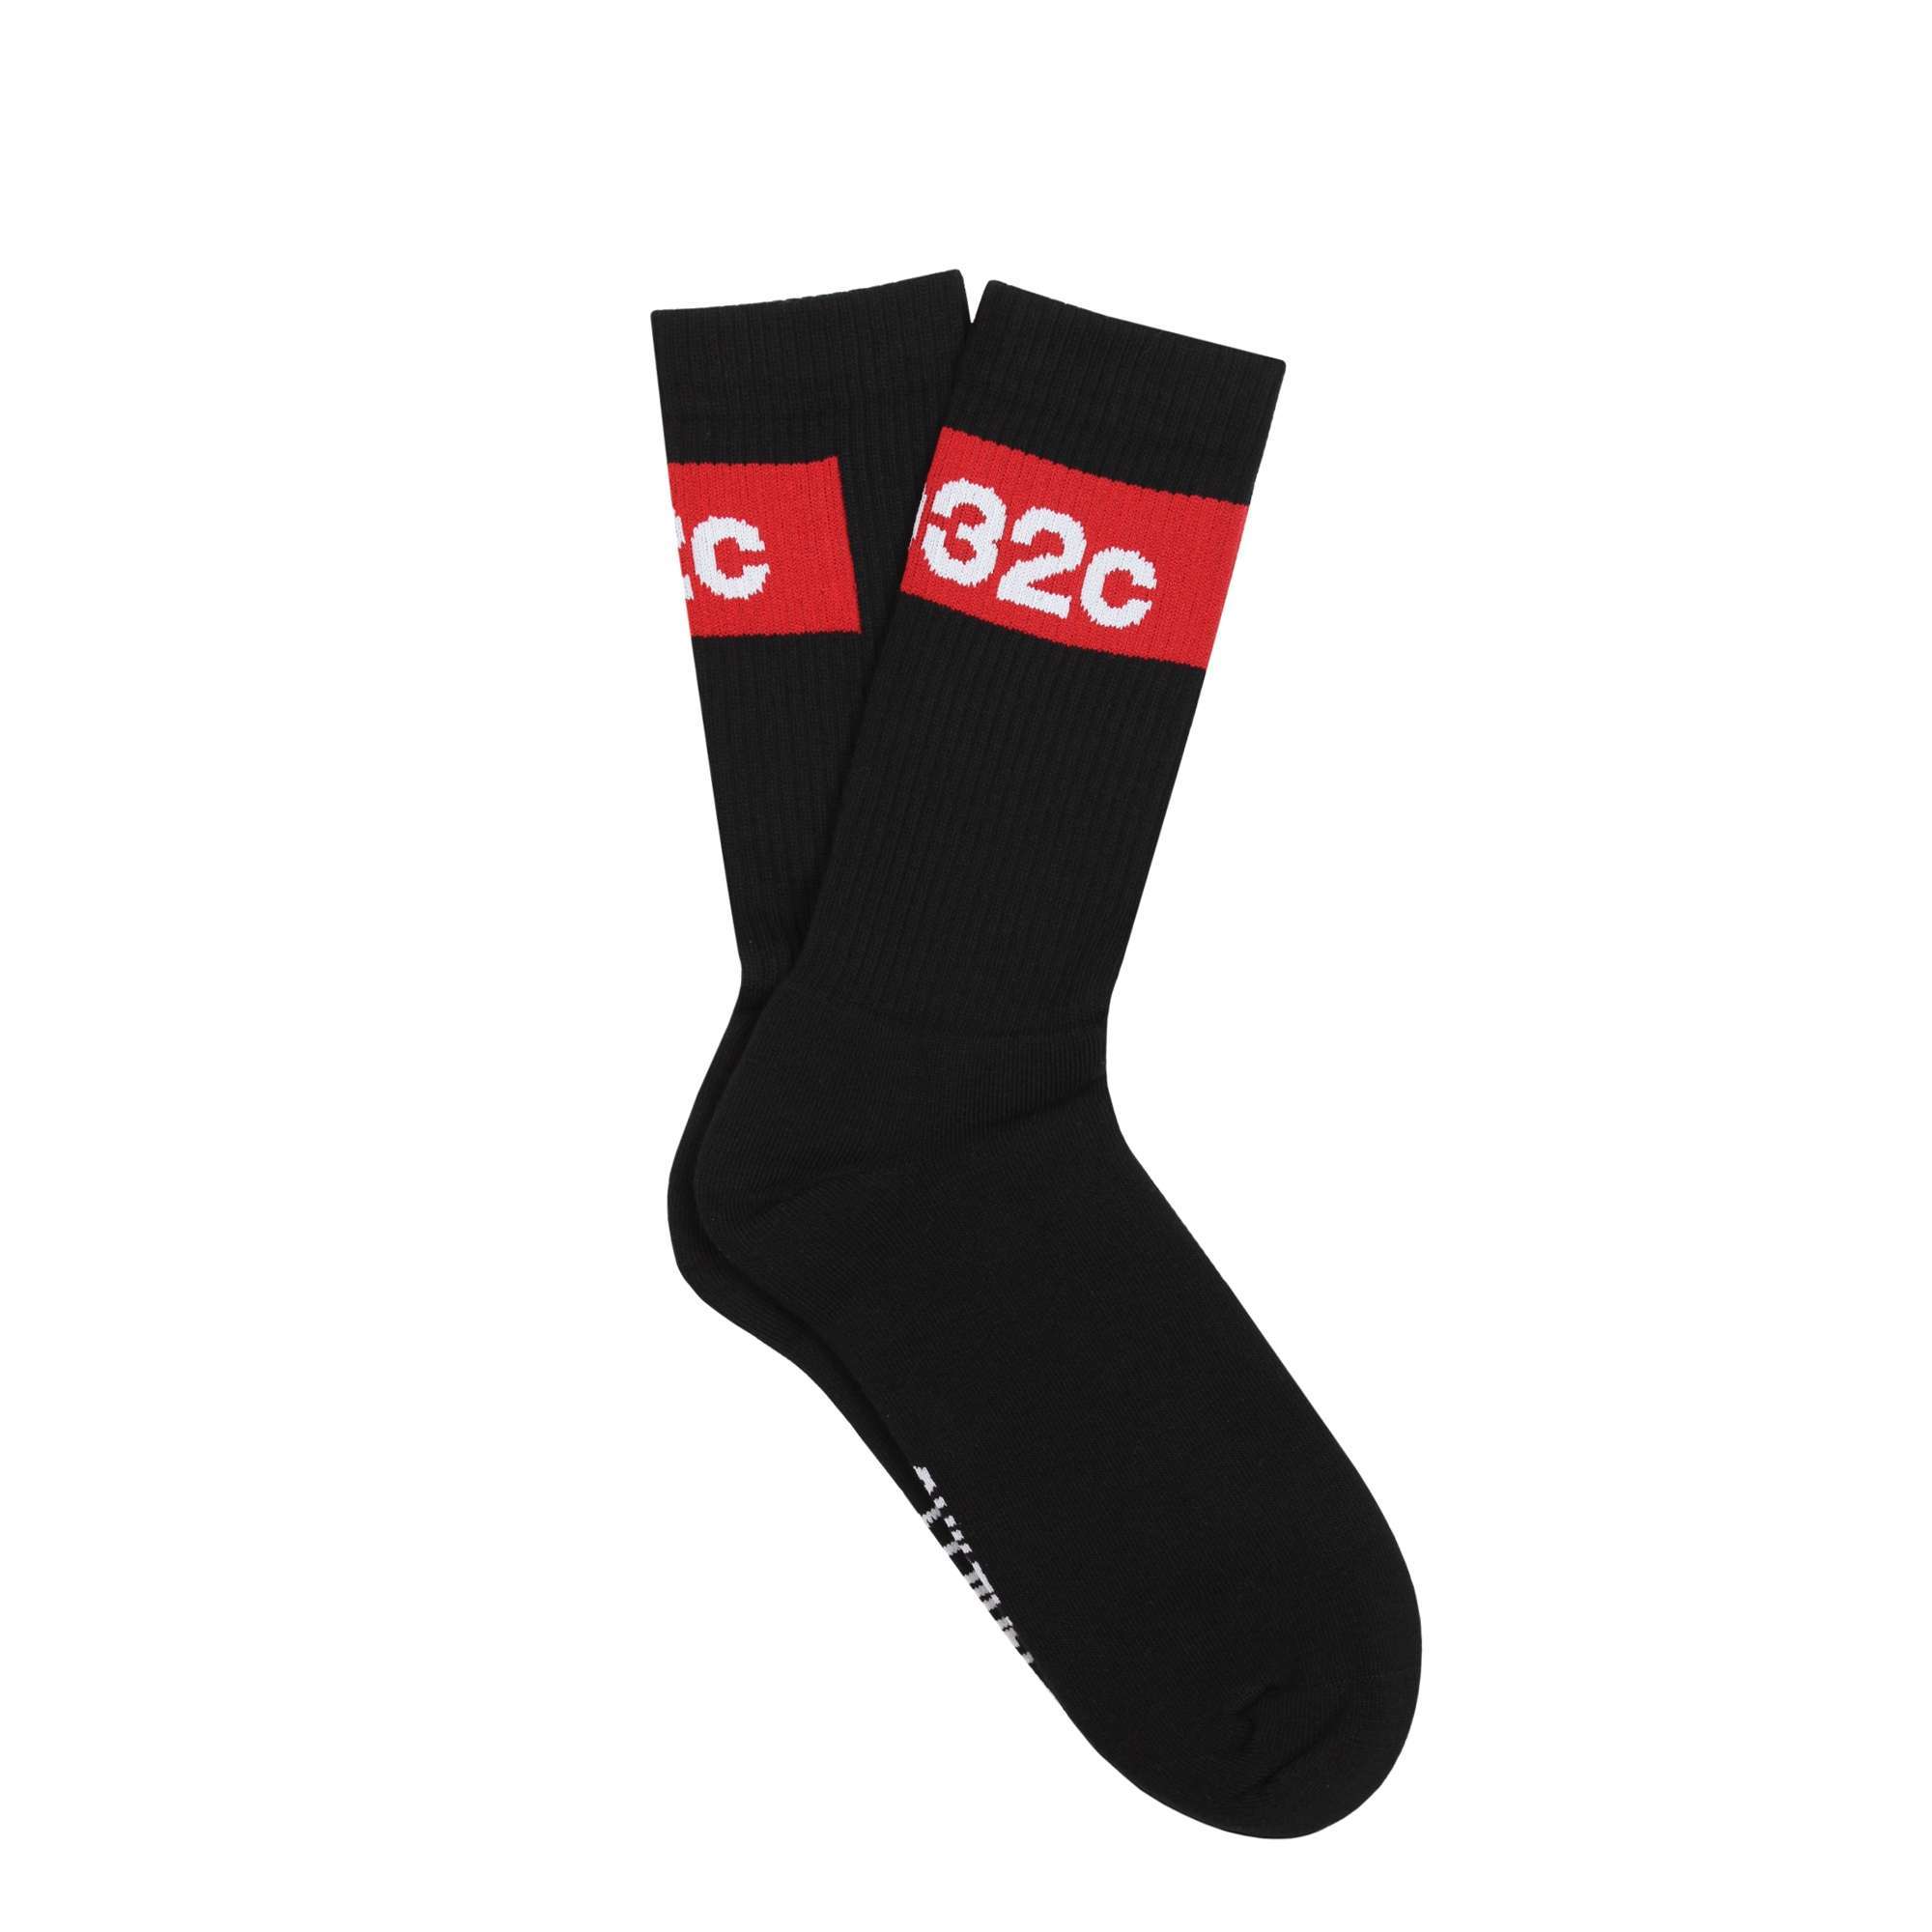 Tape Socks Black | 032c | ACT STORE Online